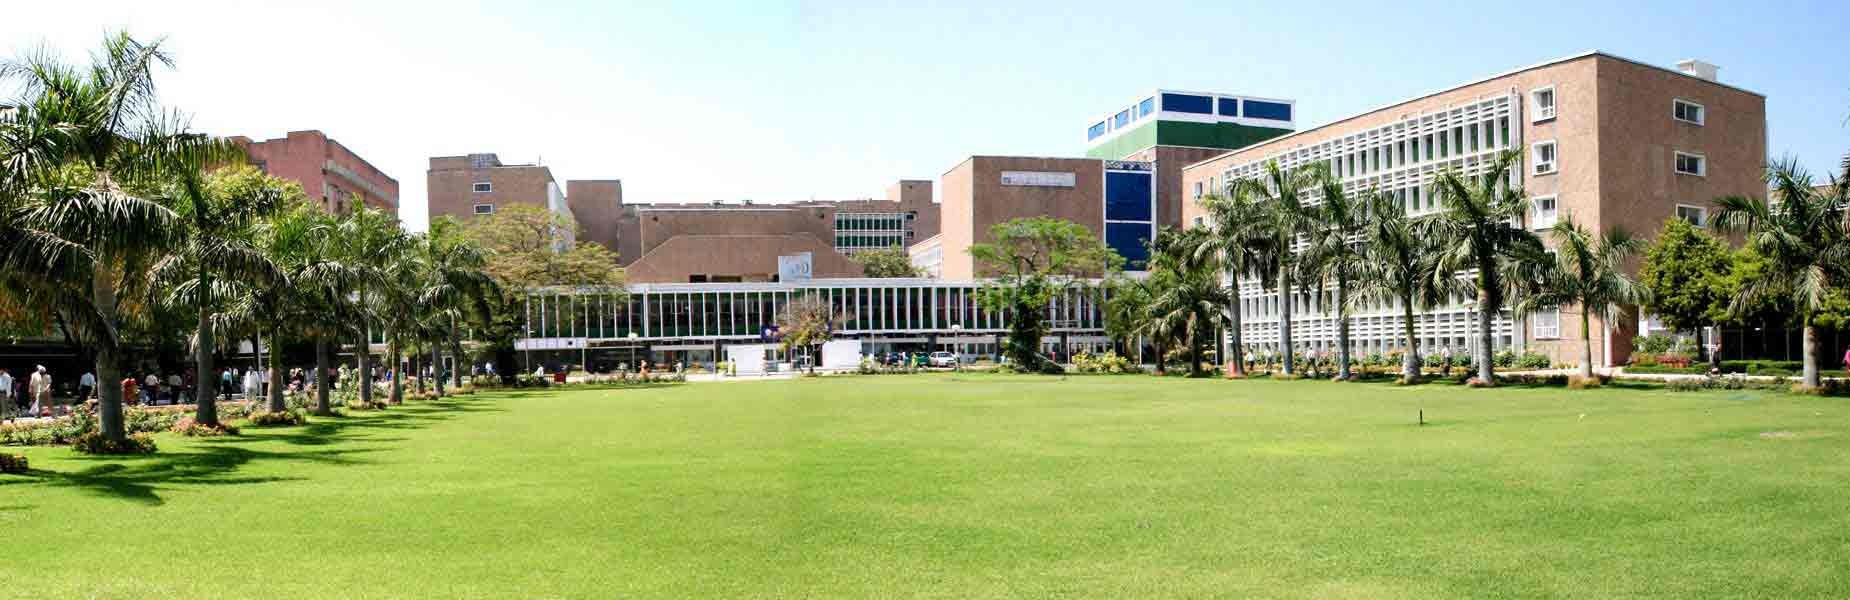 All India Institute Of Medical Sciences (AIIMS), New Delhi